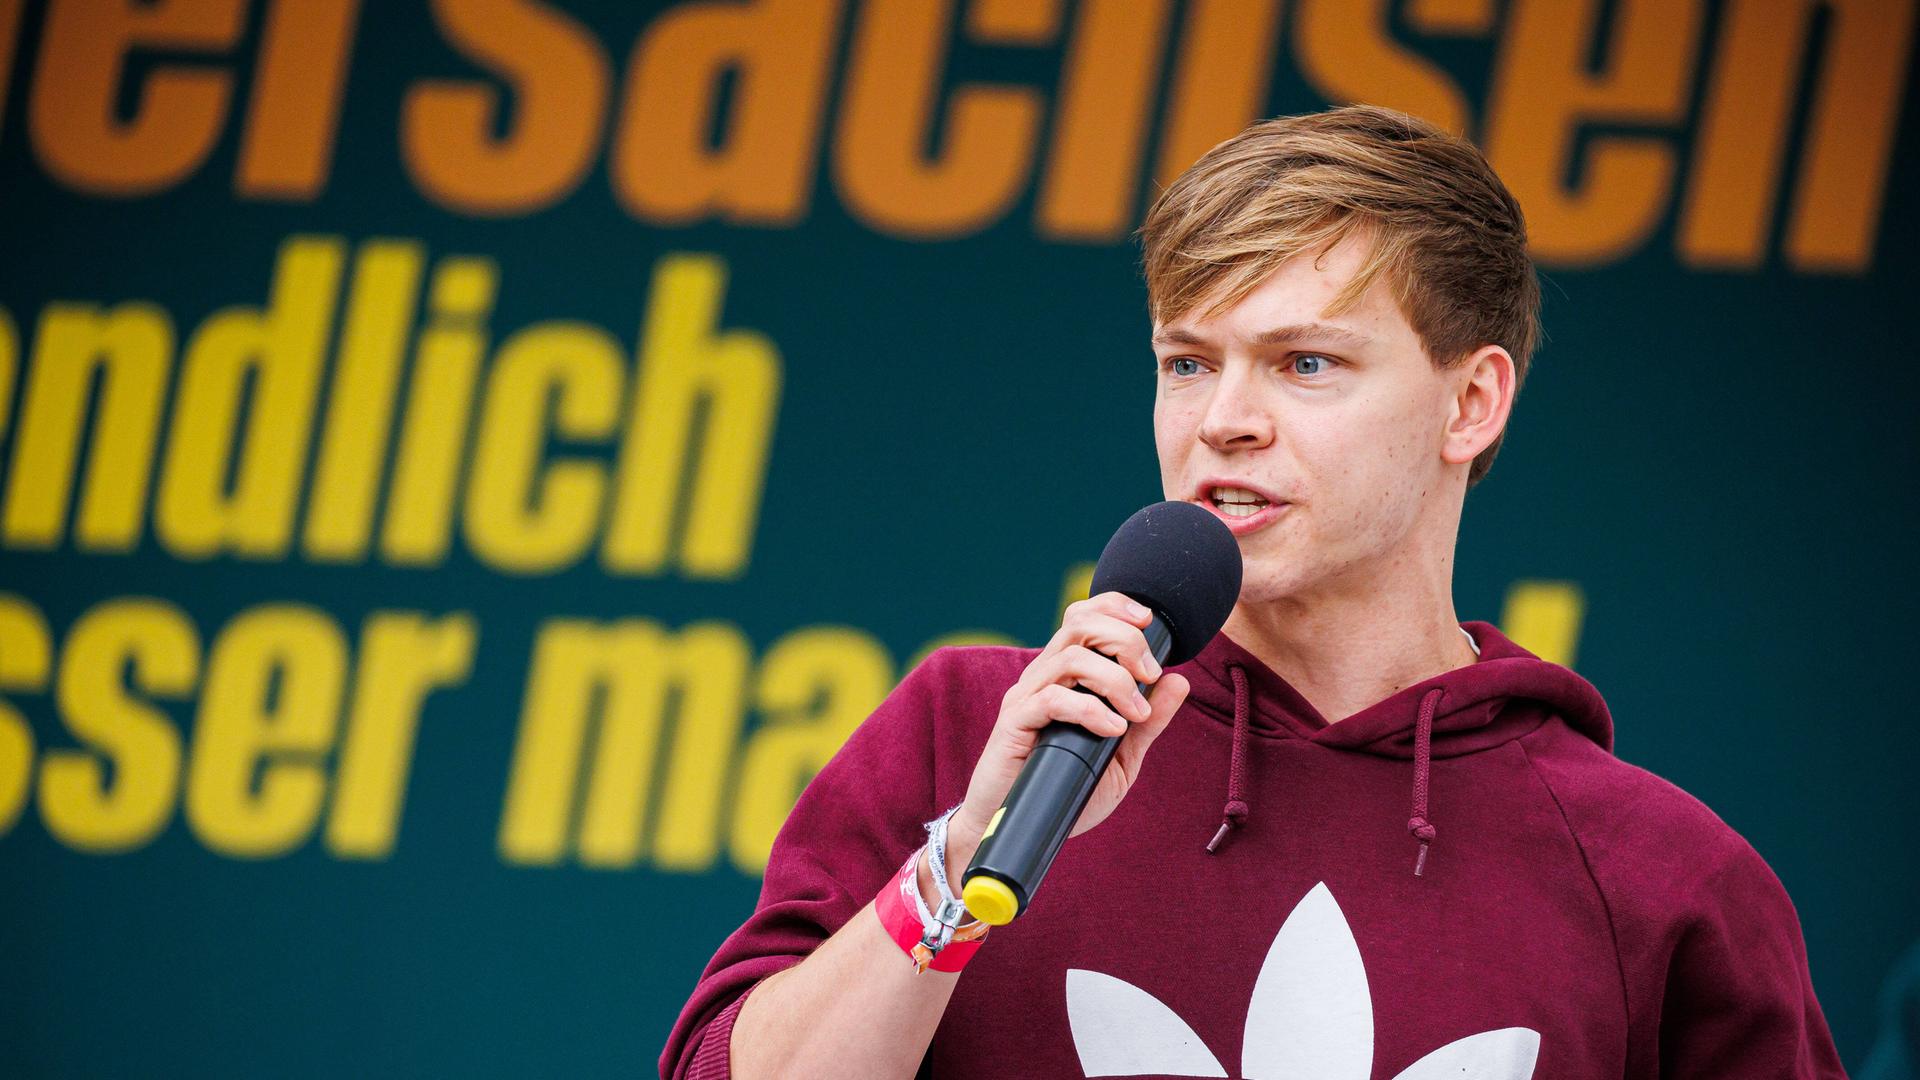 Timon Dzienus, Bundessprecher der Grünen Jugend, redet auf einer Bühne während einer Wahlkampfveranstaltung der Grünen zur Landtagswahl Niedersachsen